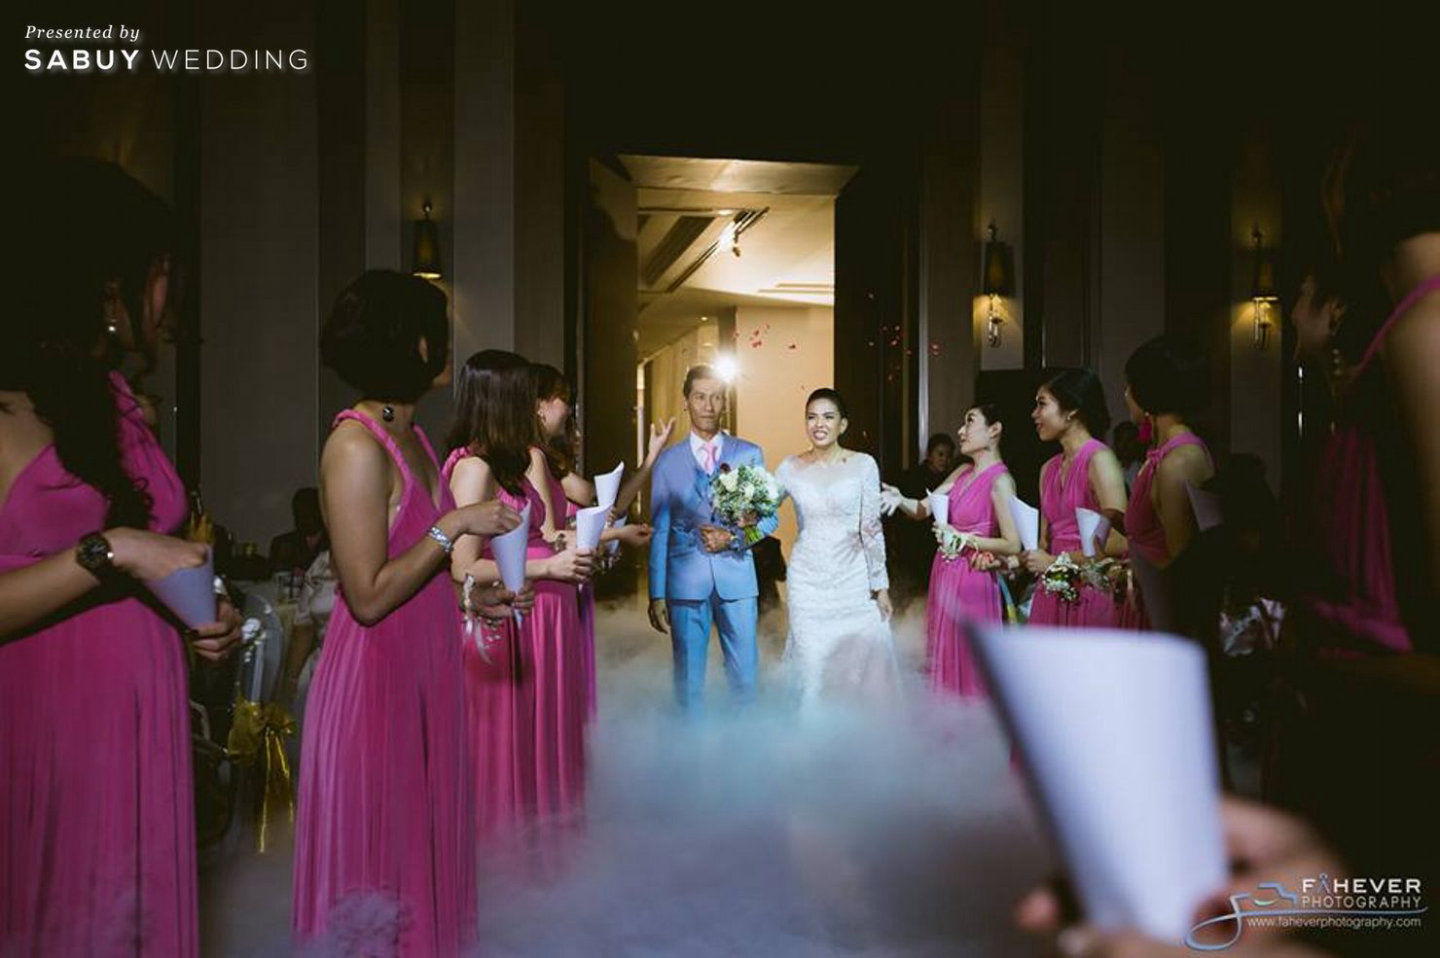 งานแต่งงาน,สถานที่แต่งงาน,สถานที่จัดงานแต่งงาน,โรงแรม,Fahever Photography,Swissotel Le Concorde Bangkok,บ่าวสาว,เพื่อนเจ้าสาว MC Beam by Fahever กับงานแต่งสุดประทับใจ แขกทุกวัยเป็นปลื้ม